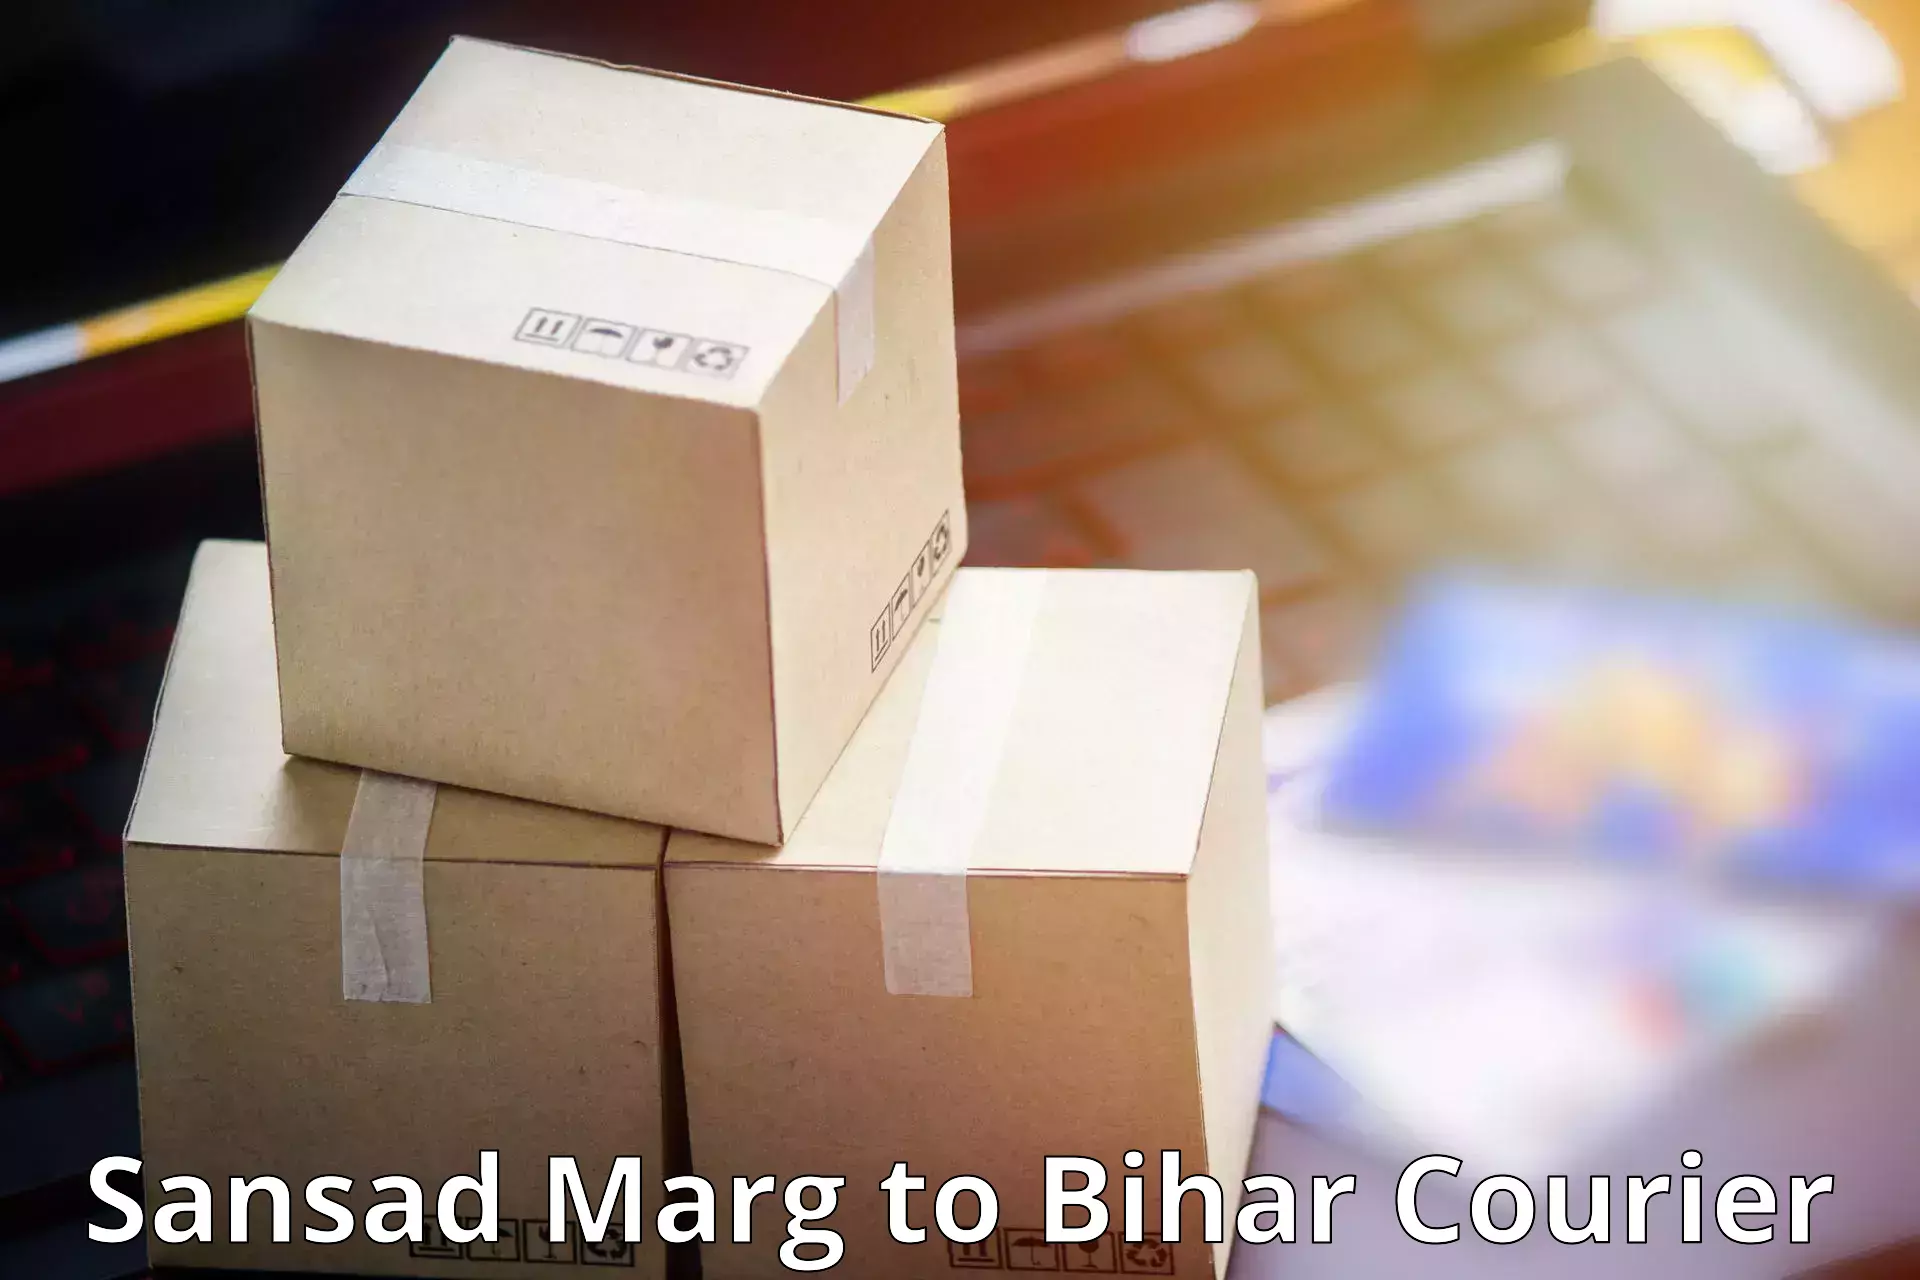 Reliable parcel services Sansad Marg to Rohtas